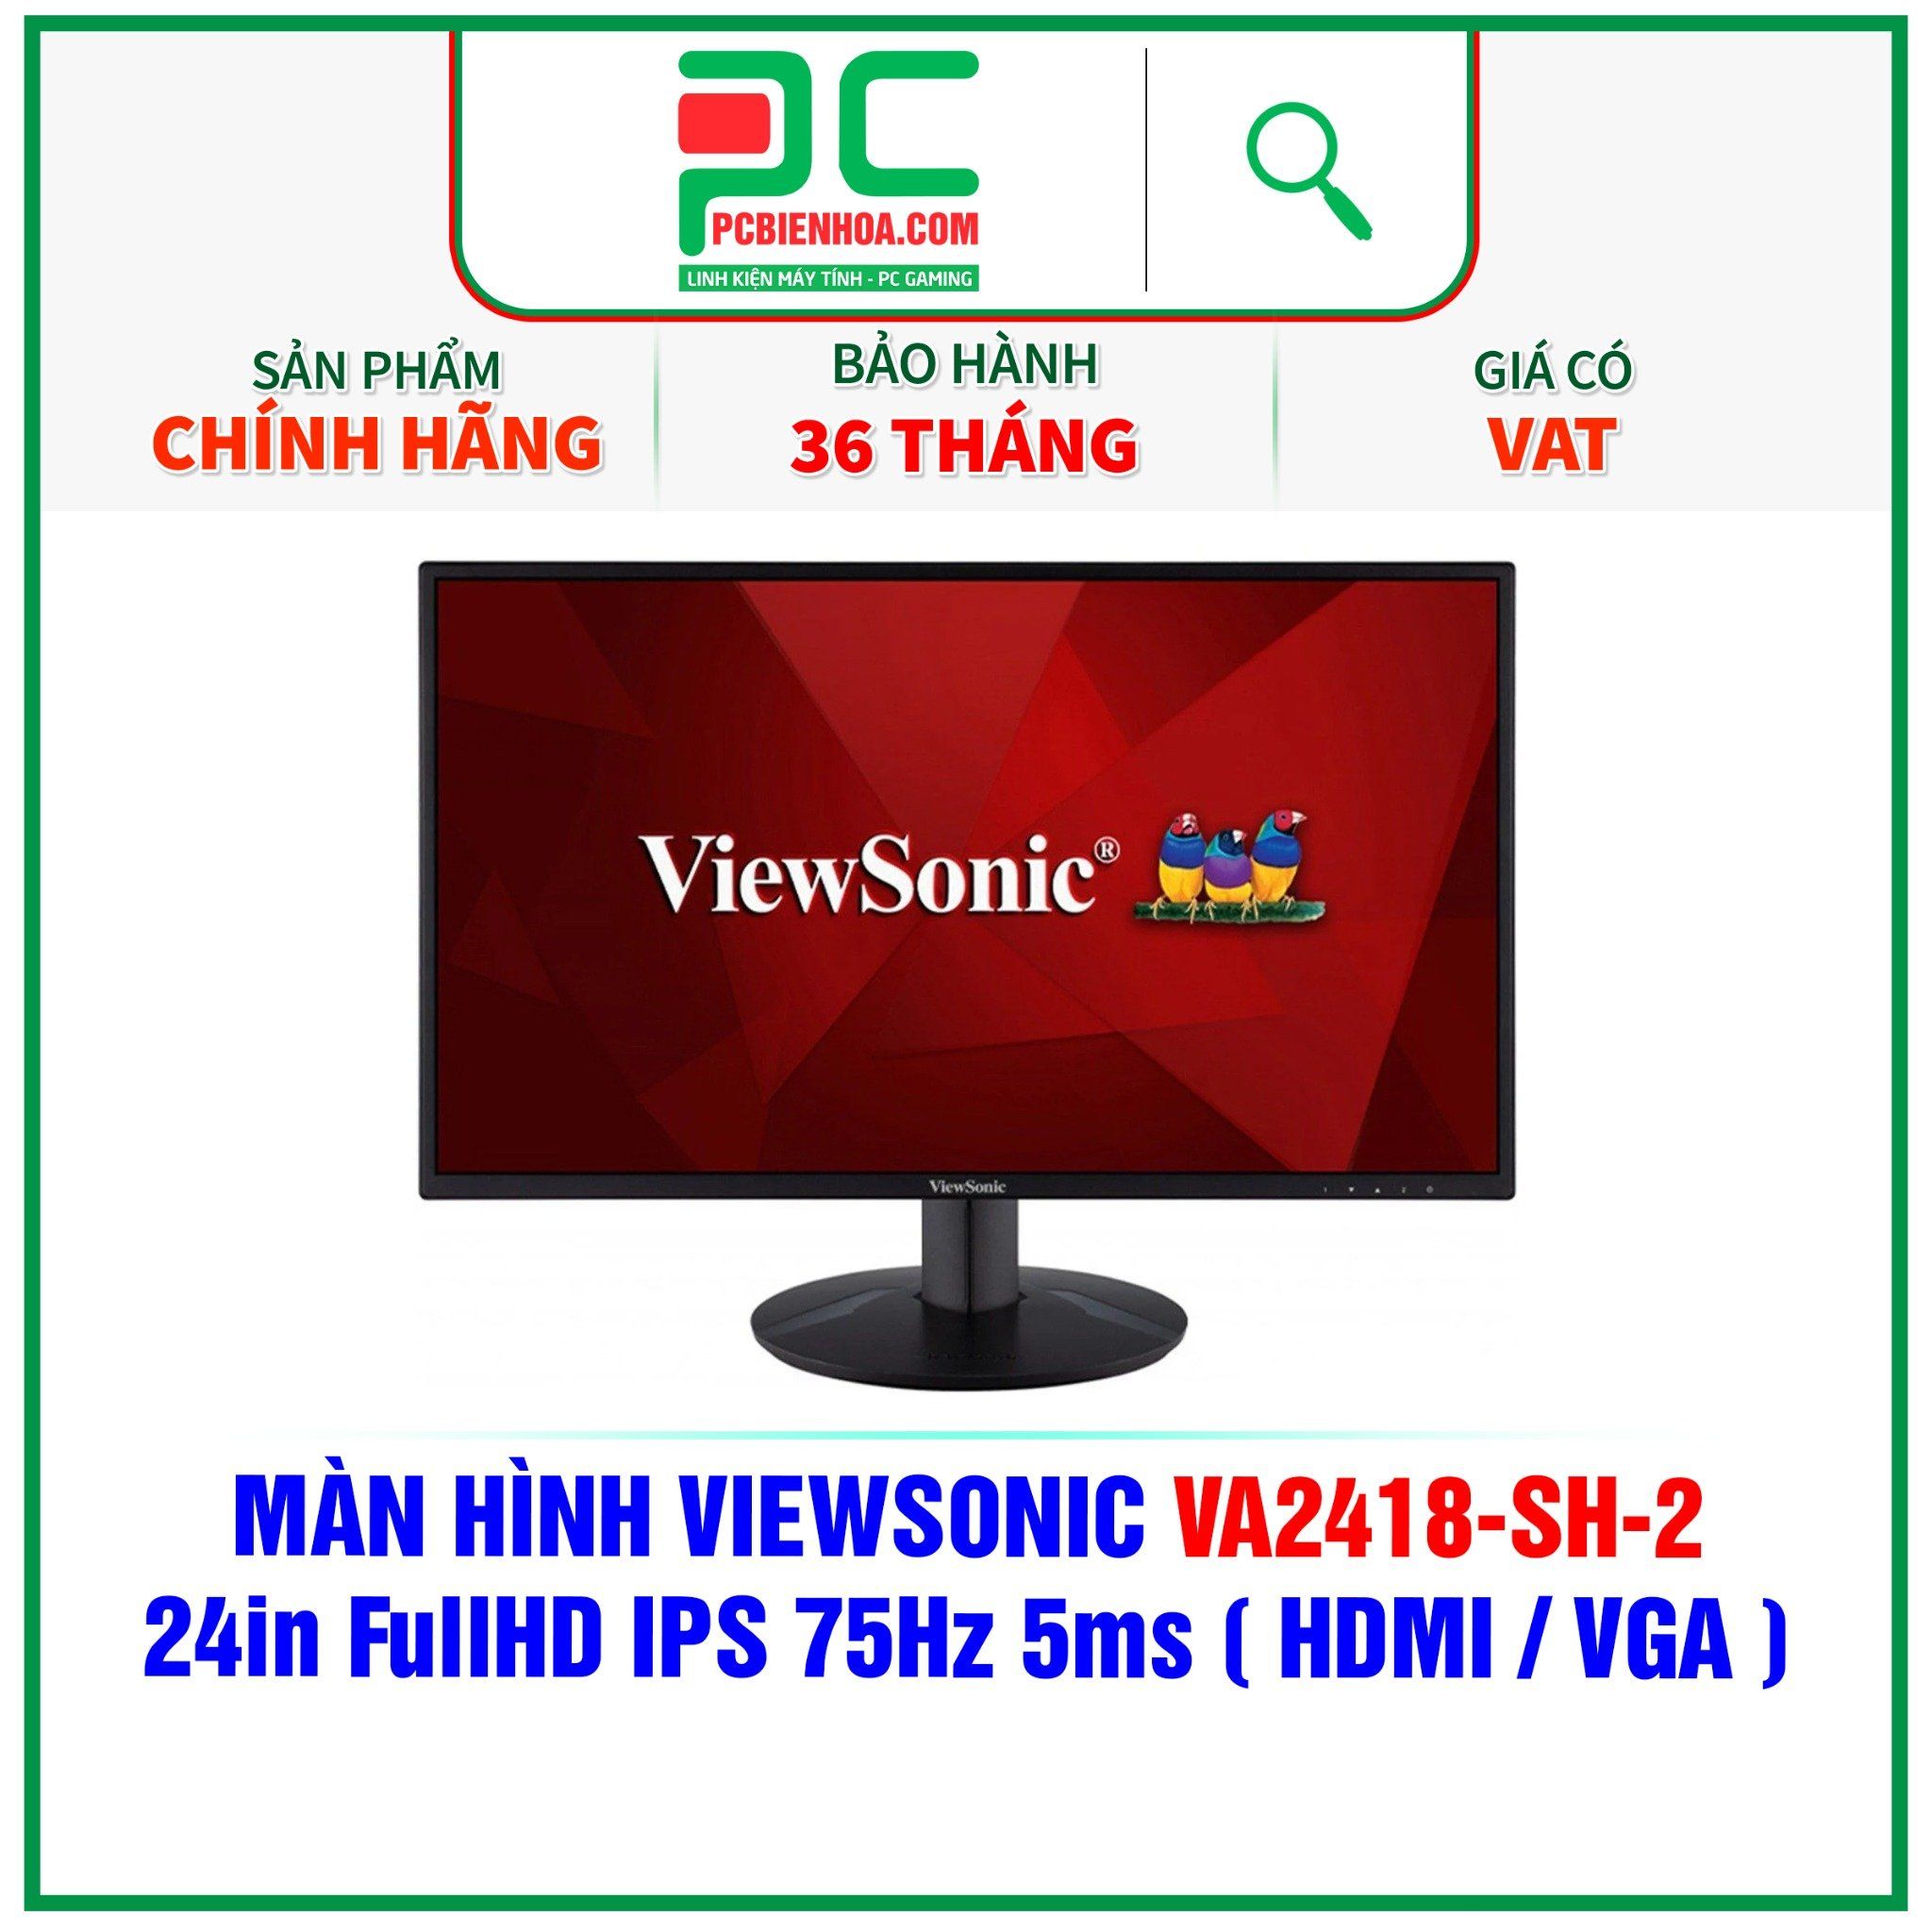  MÀN HÌNH VIEWSONIC VA2418-SH-2 - 24in FullHD IPS 75Hz 5ms ( HDMI / VGA ) 